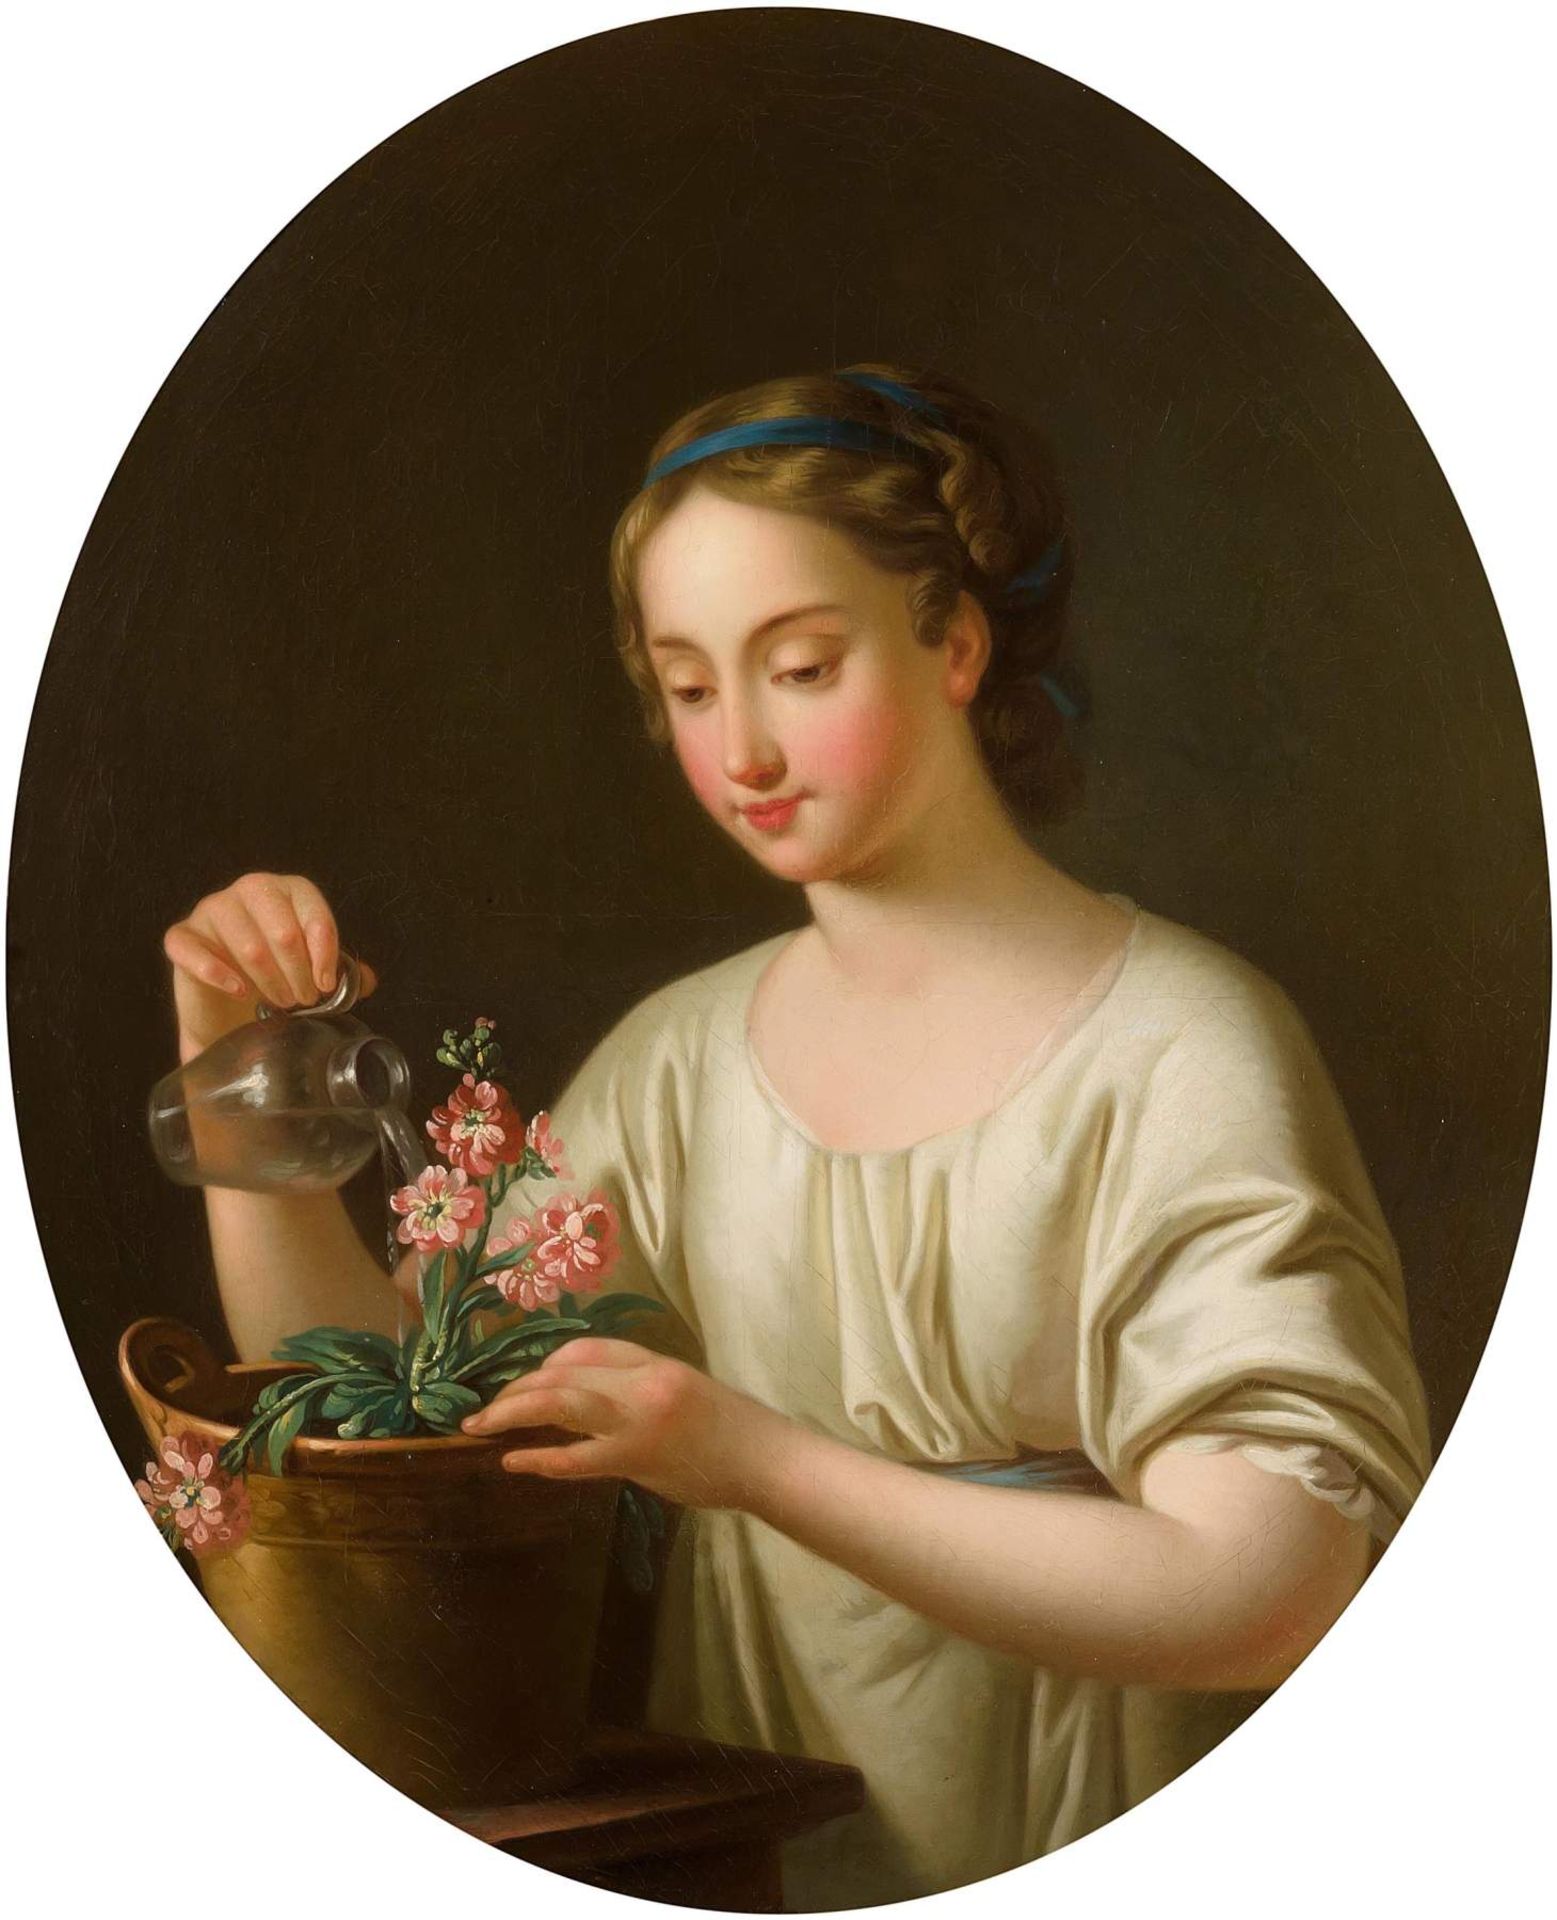 Deutschland, Anfang 19.Jh.
Junges Mädchen beim Blumen giessen. Öl auf Leinwand. 82x69,4 cm (